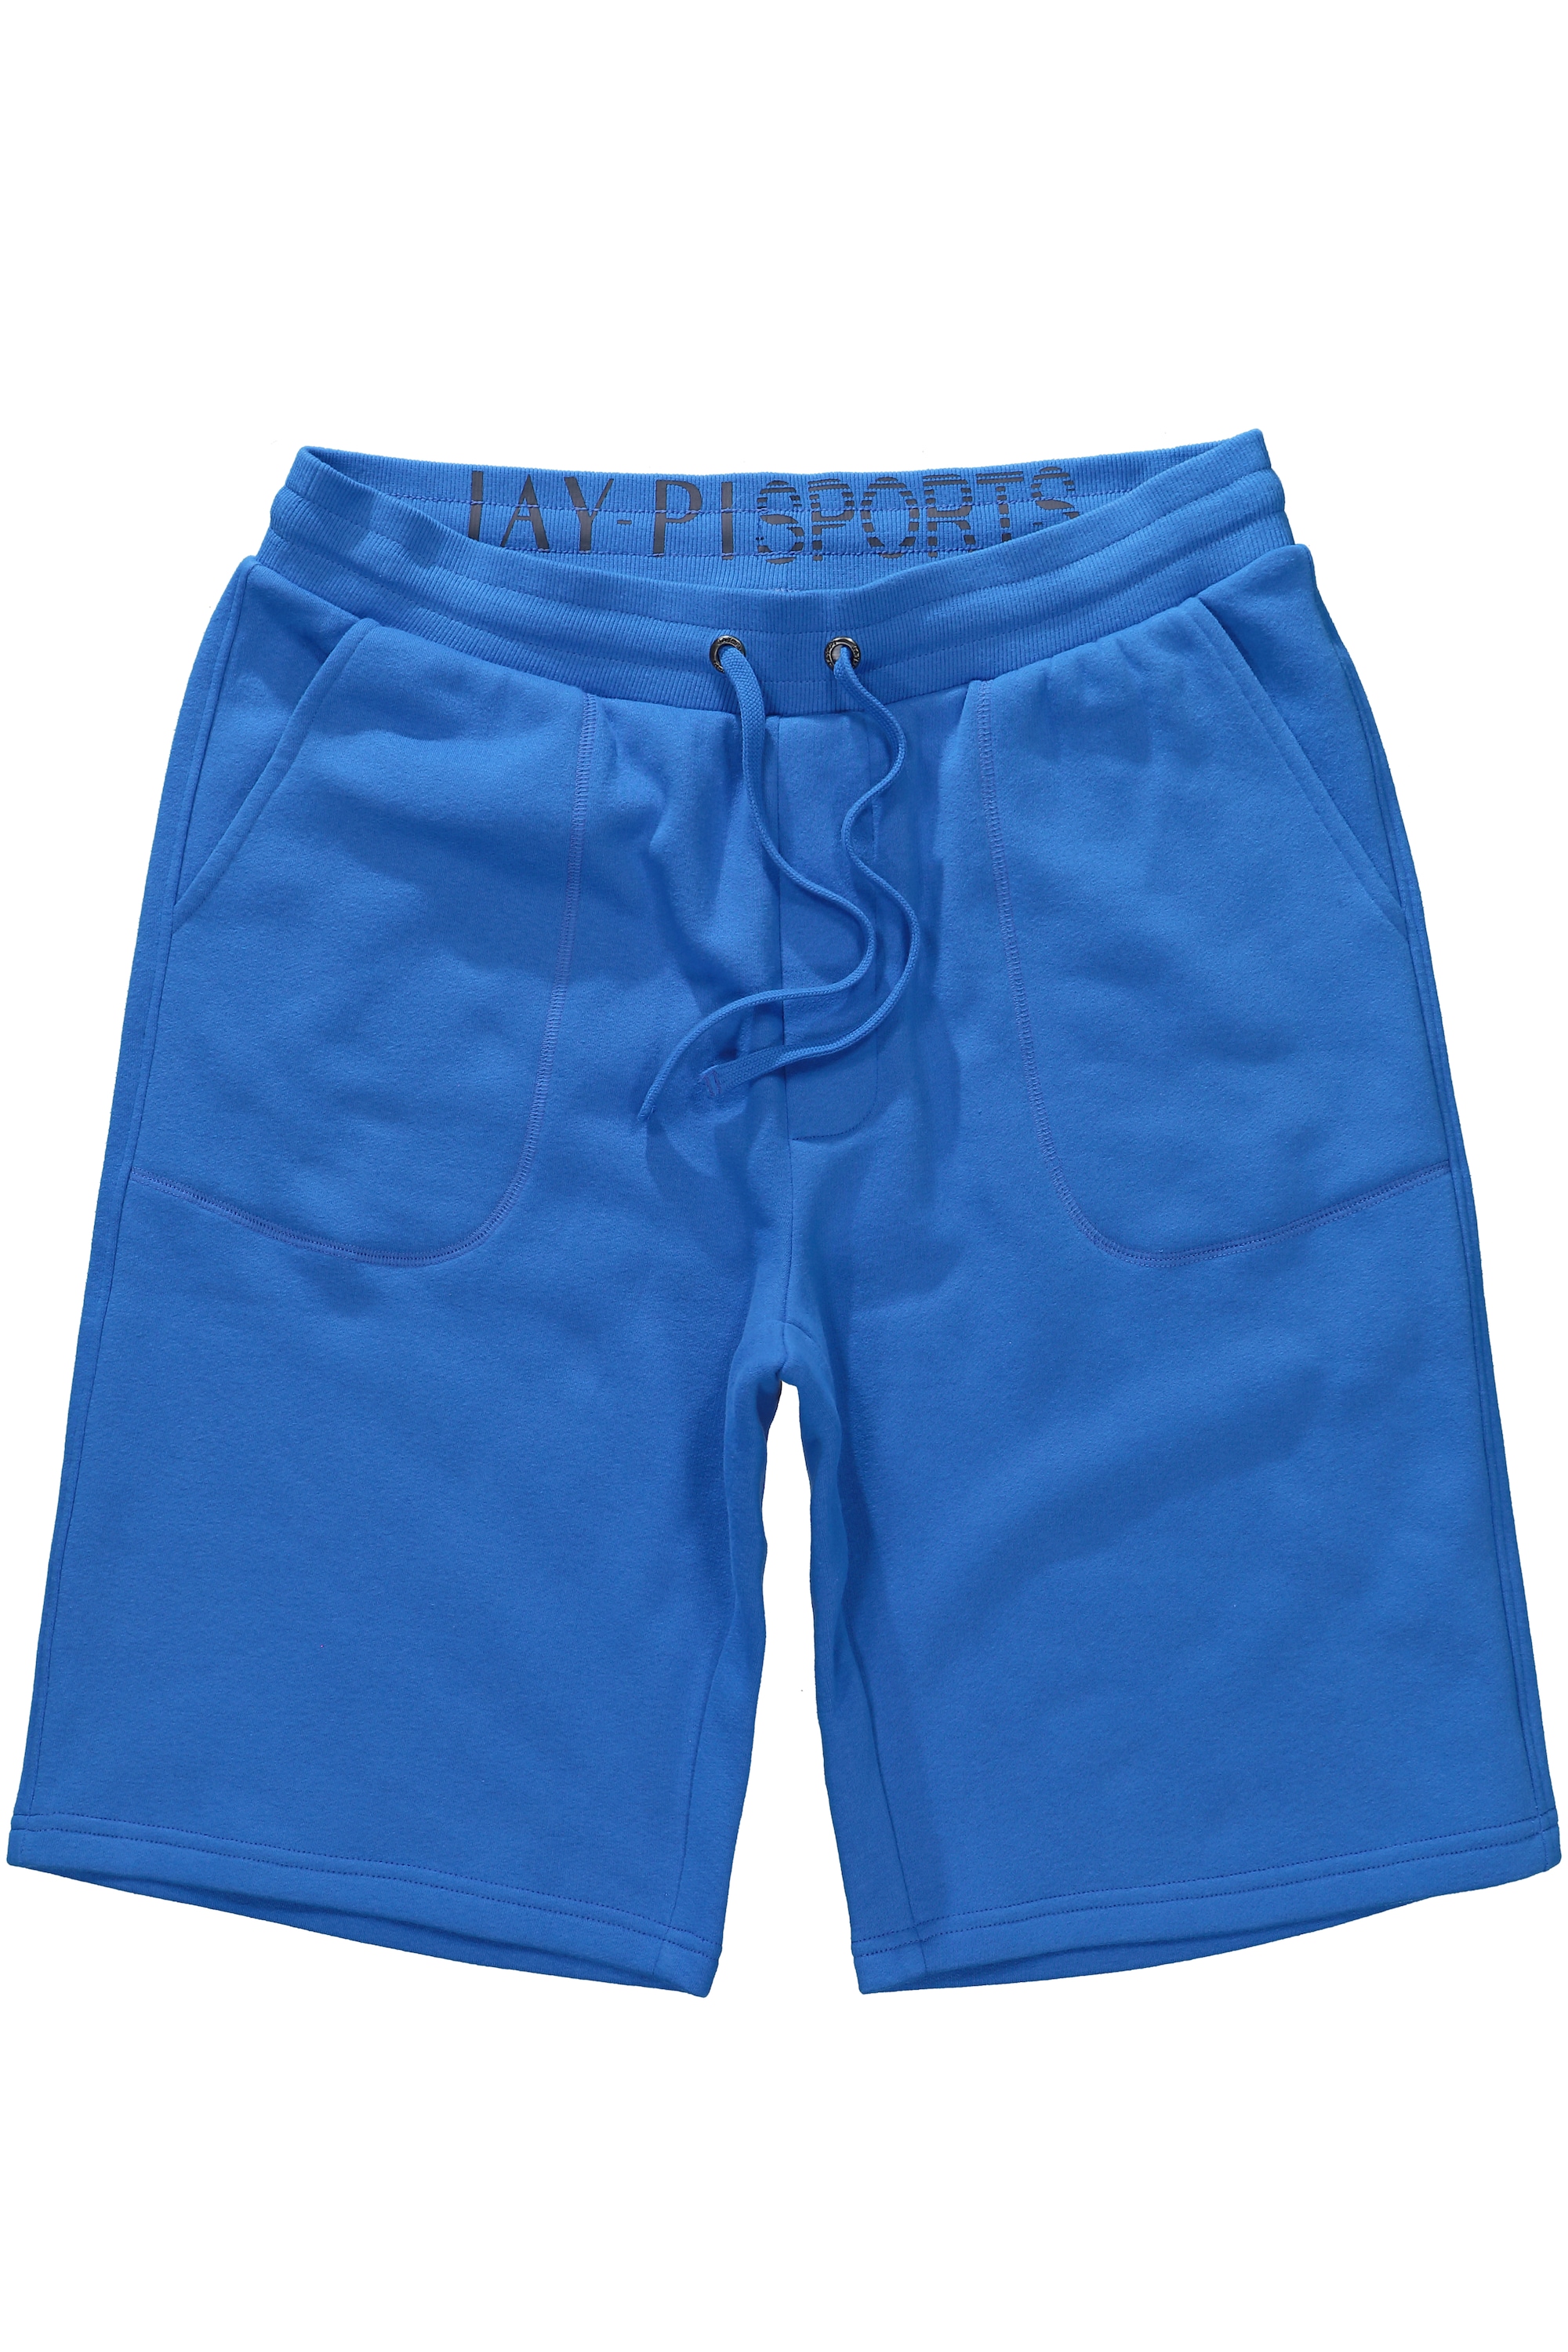 Тканевые шорты JP1880 Bermuda, цвет clematisblau